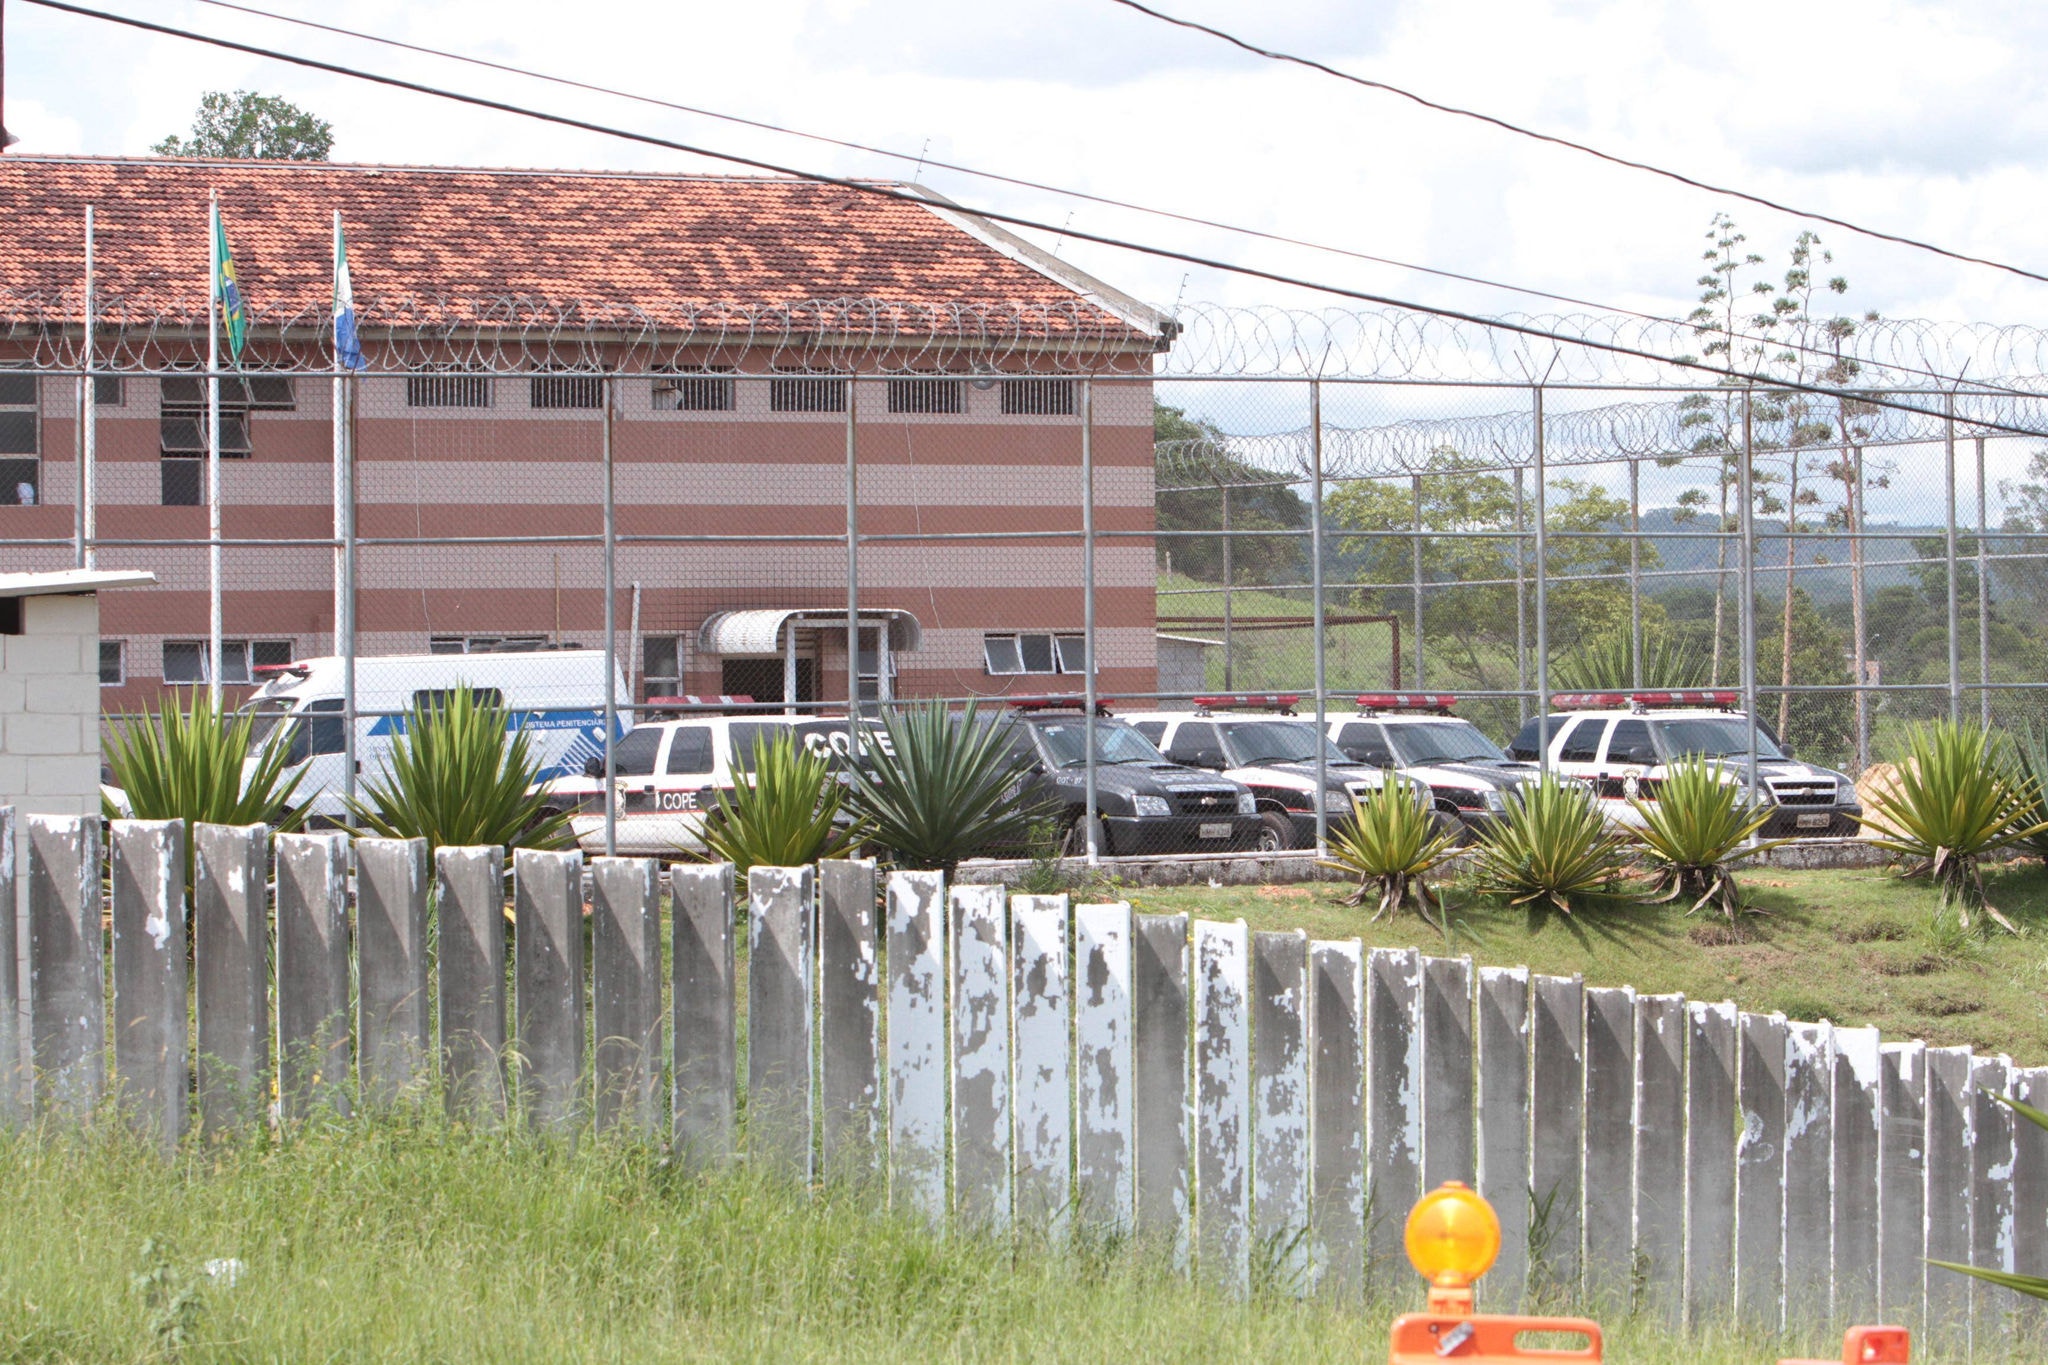 O desembargador Catta Preta expediu mandado de segurança, com pedido de liminar, contra a decisão proferida pelo juiz Daniel Dourado Pacheco na última terça-feira (23), que interditou a unidade